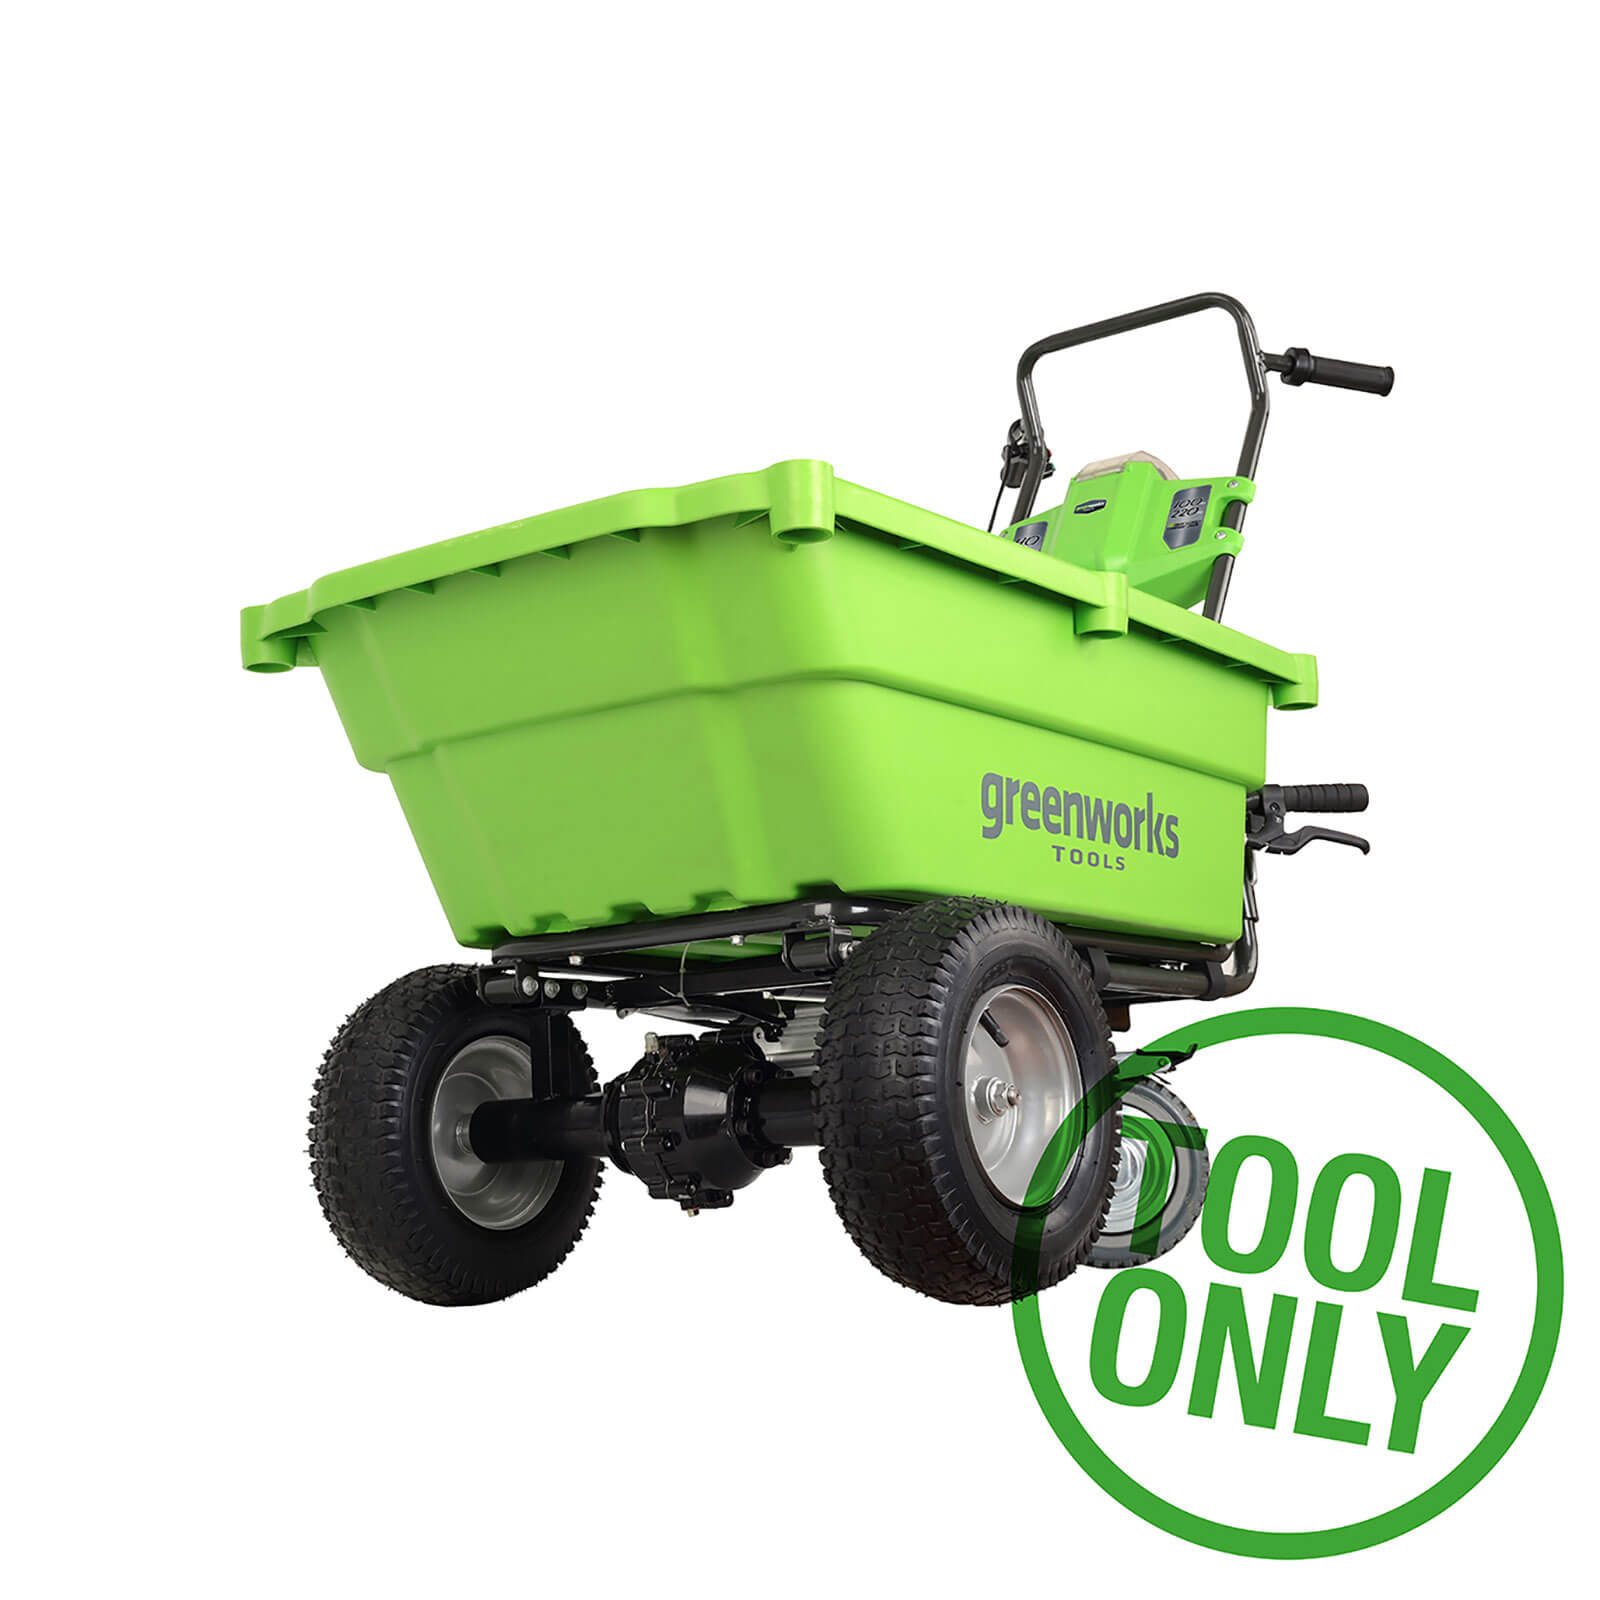 Greenworks 100kg 40V Self-Propelled Garden Cart